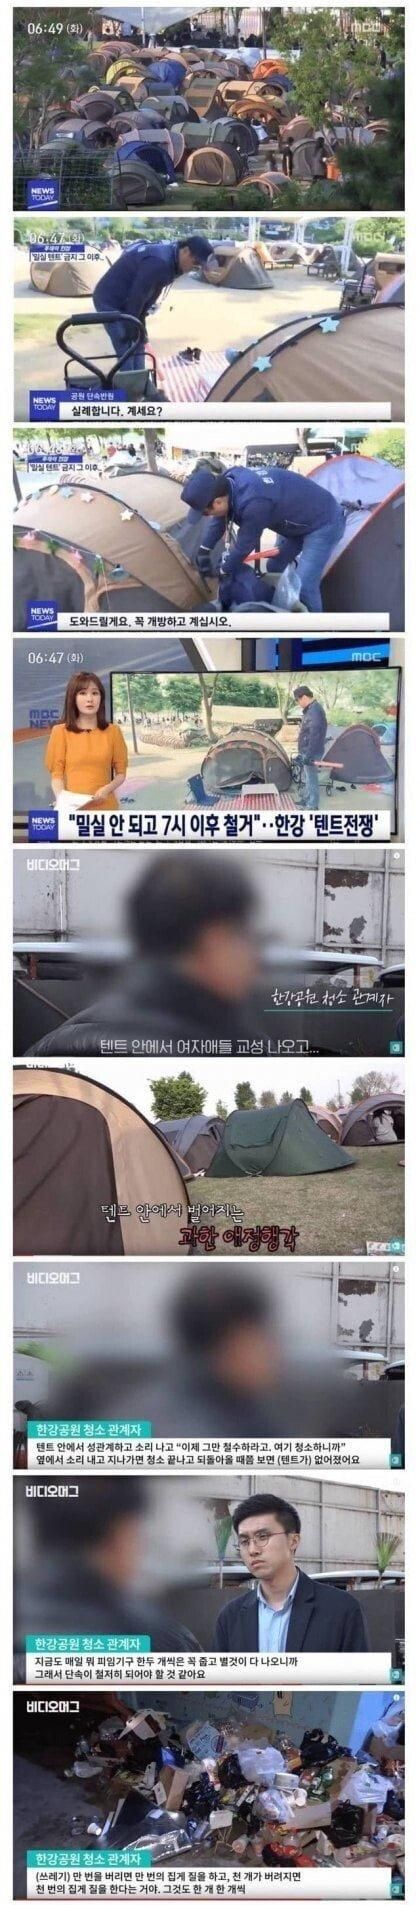 한강 텐트 금지된 이유